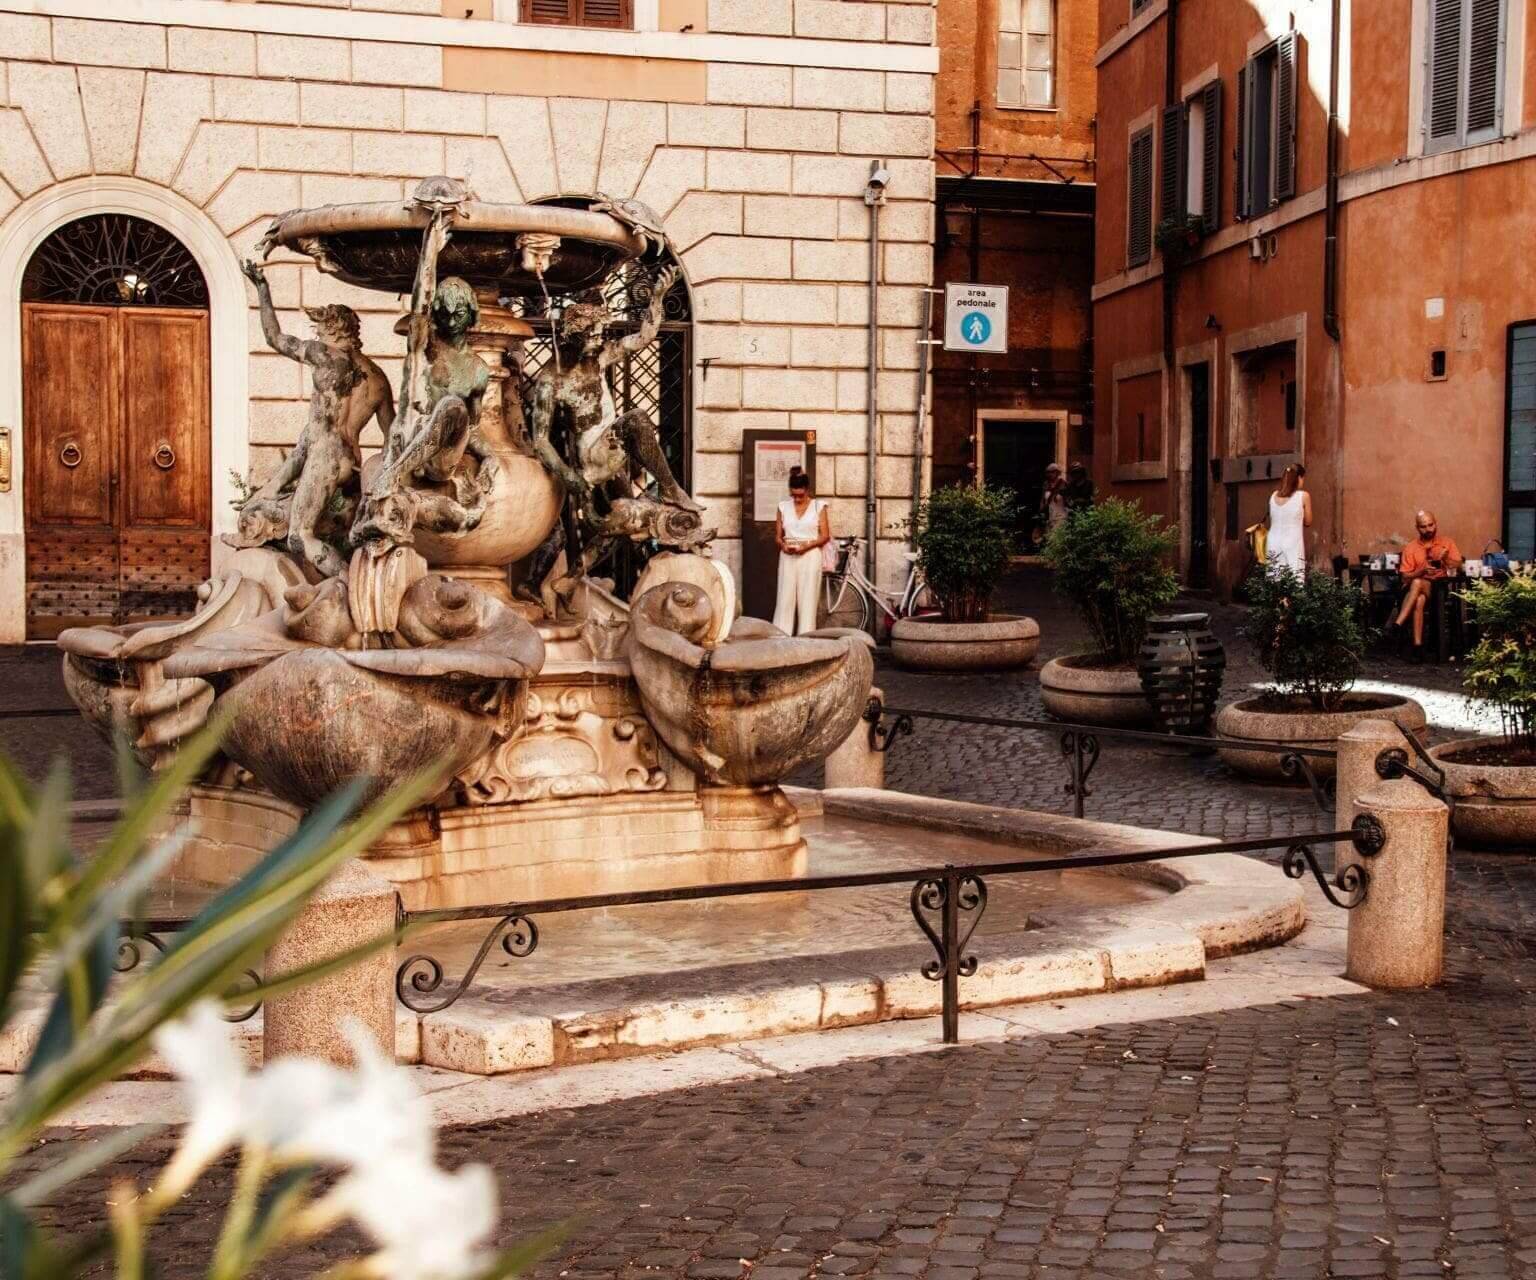 Der Schildkrötenbrunnen in der Mitte der Piazza Mattei in Rom.